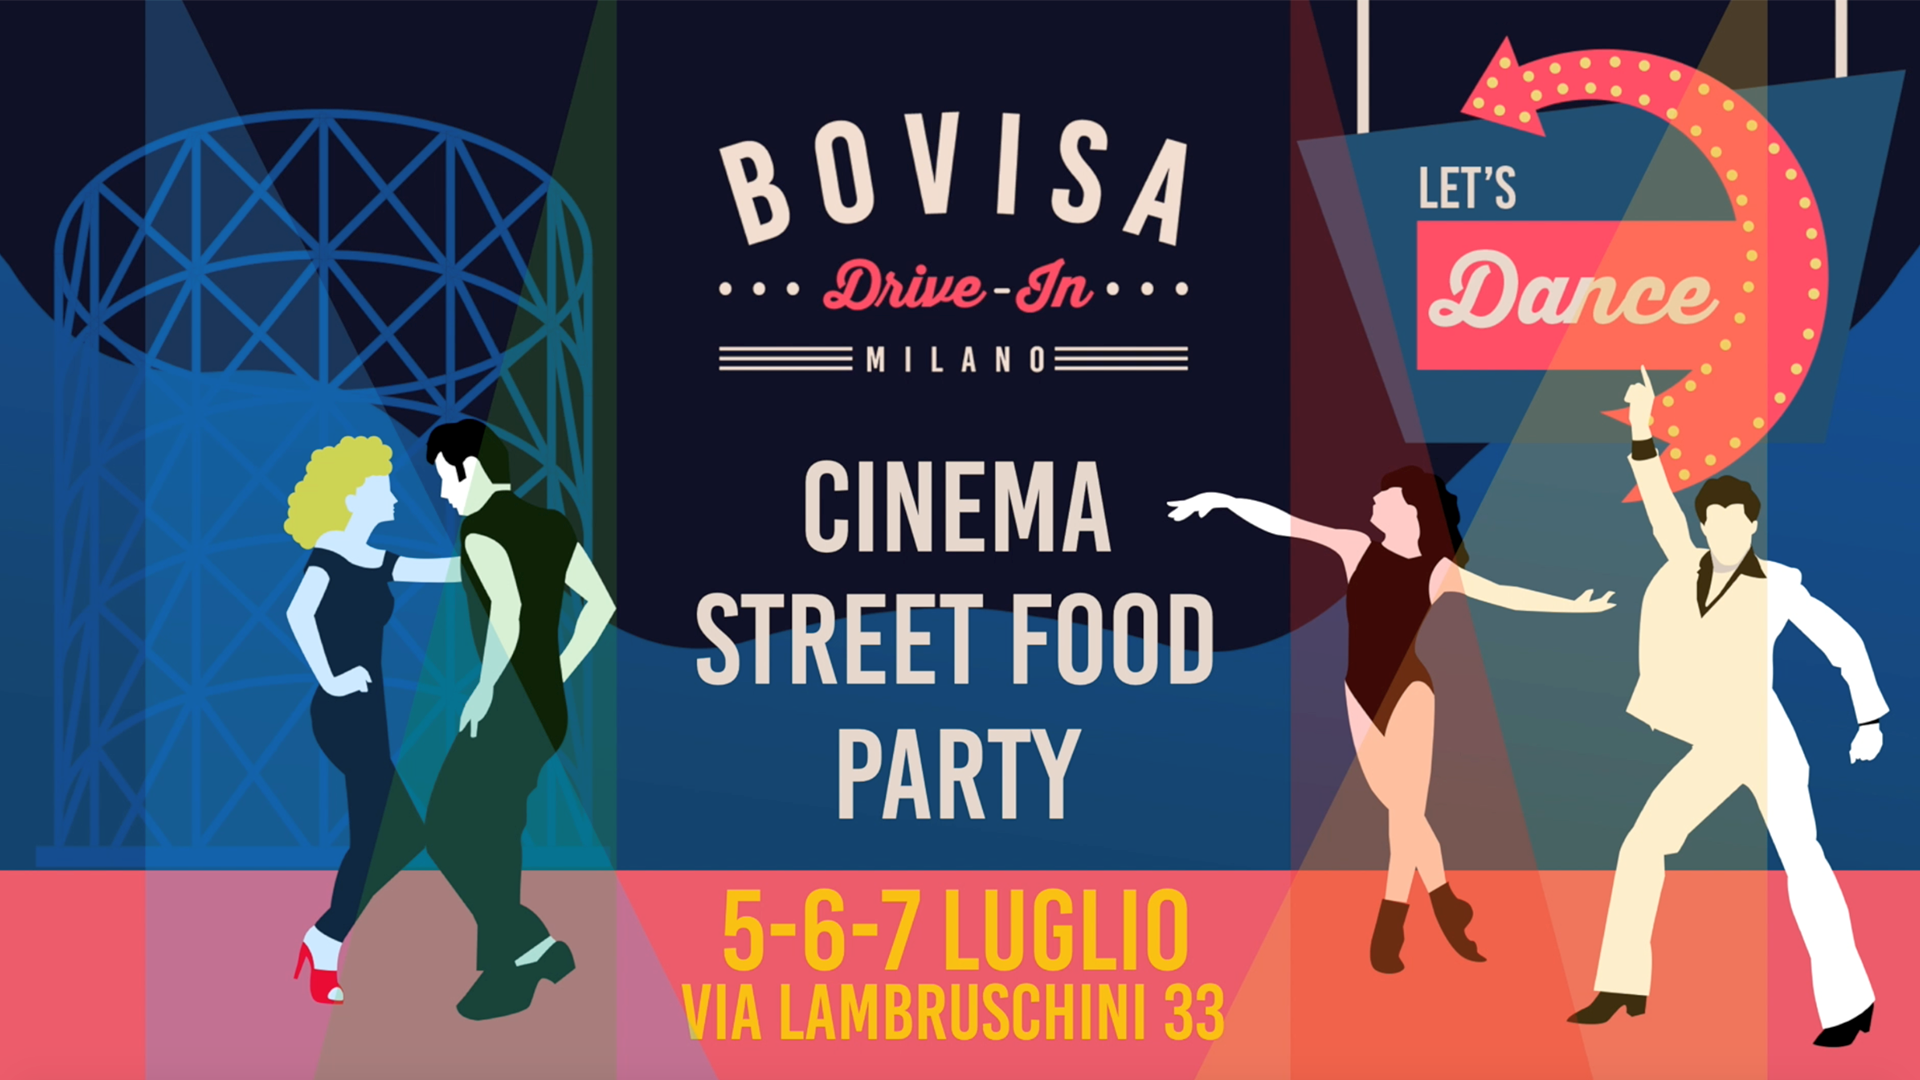 Bovisa Drive-In / Dj Set, Street Food & Cinema / Let's Dance YOUparti film milano cinema